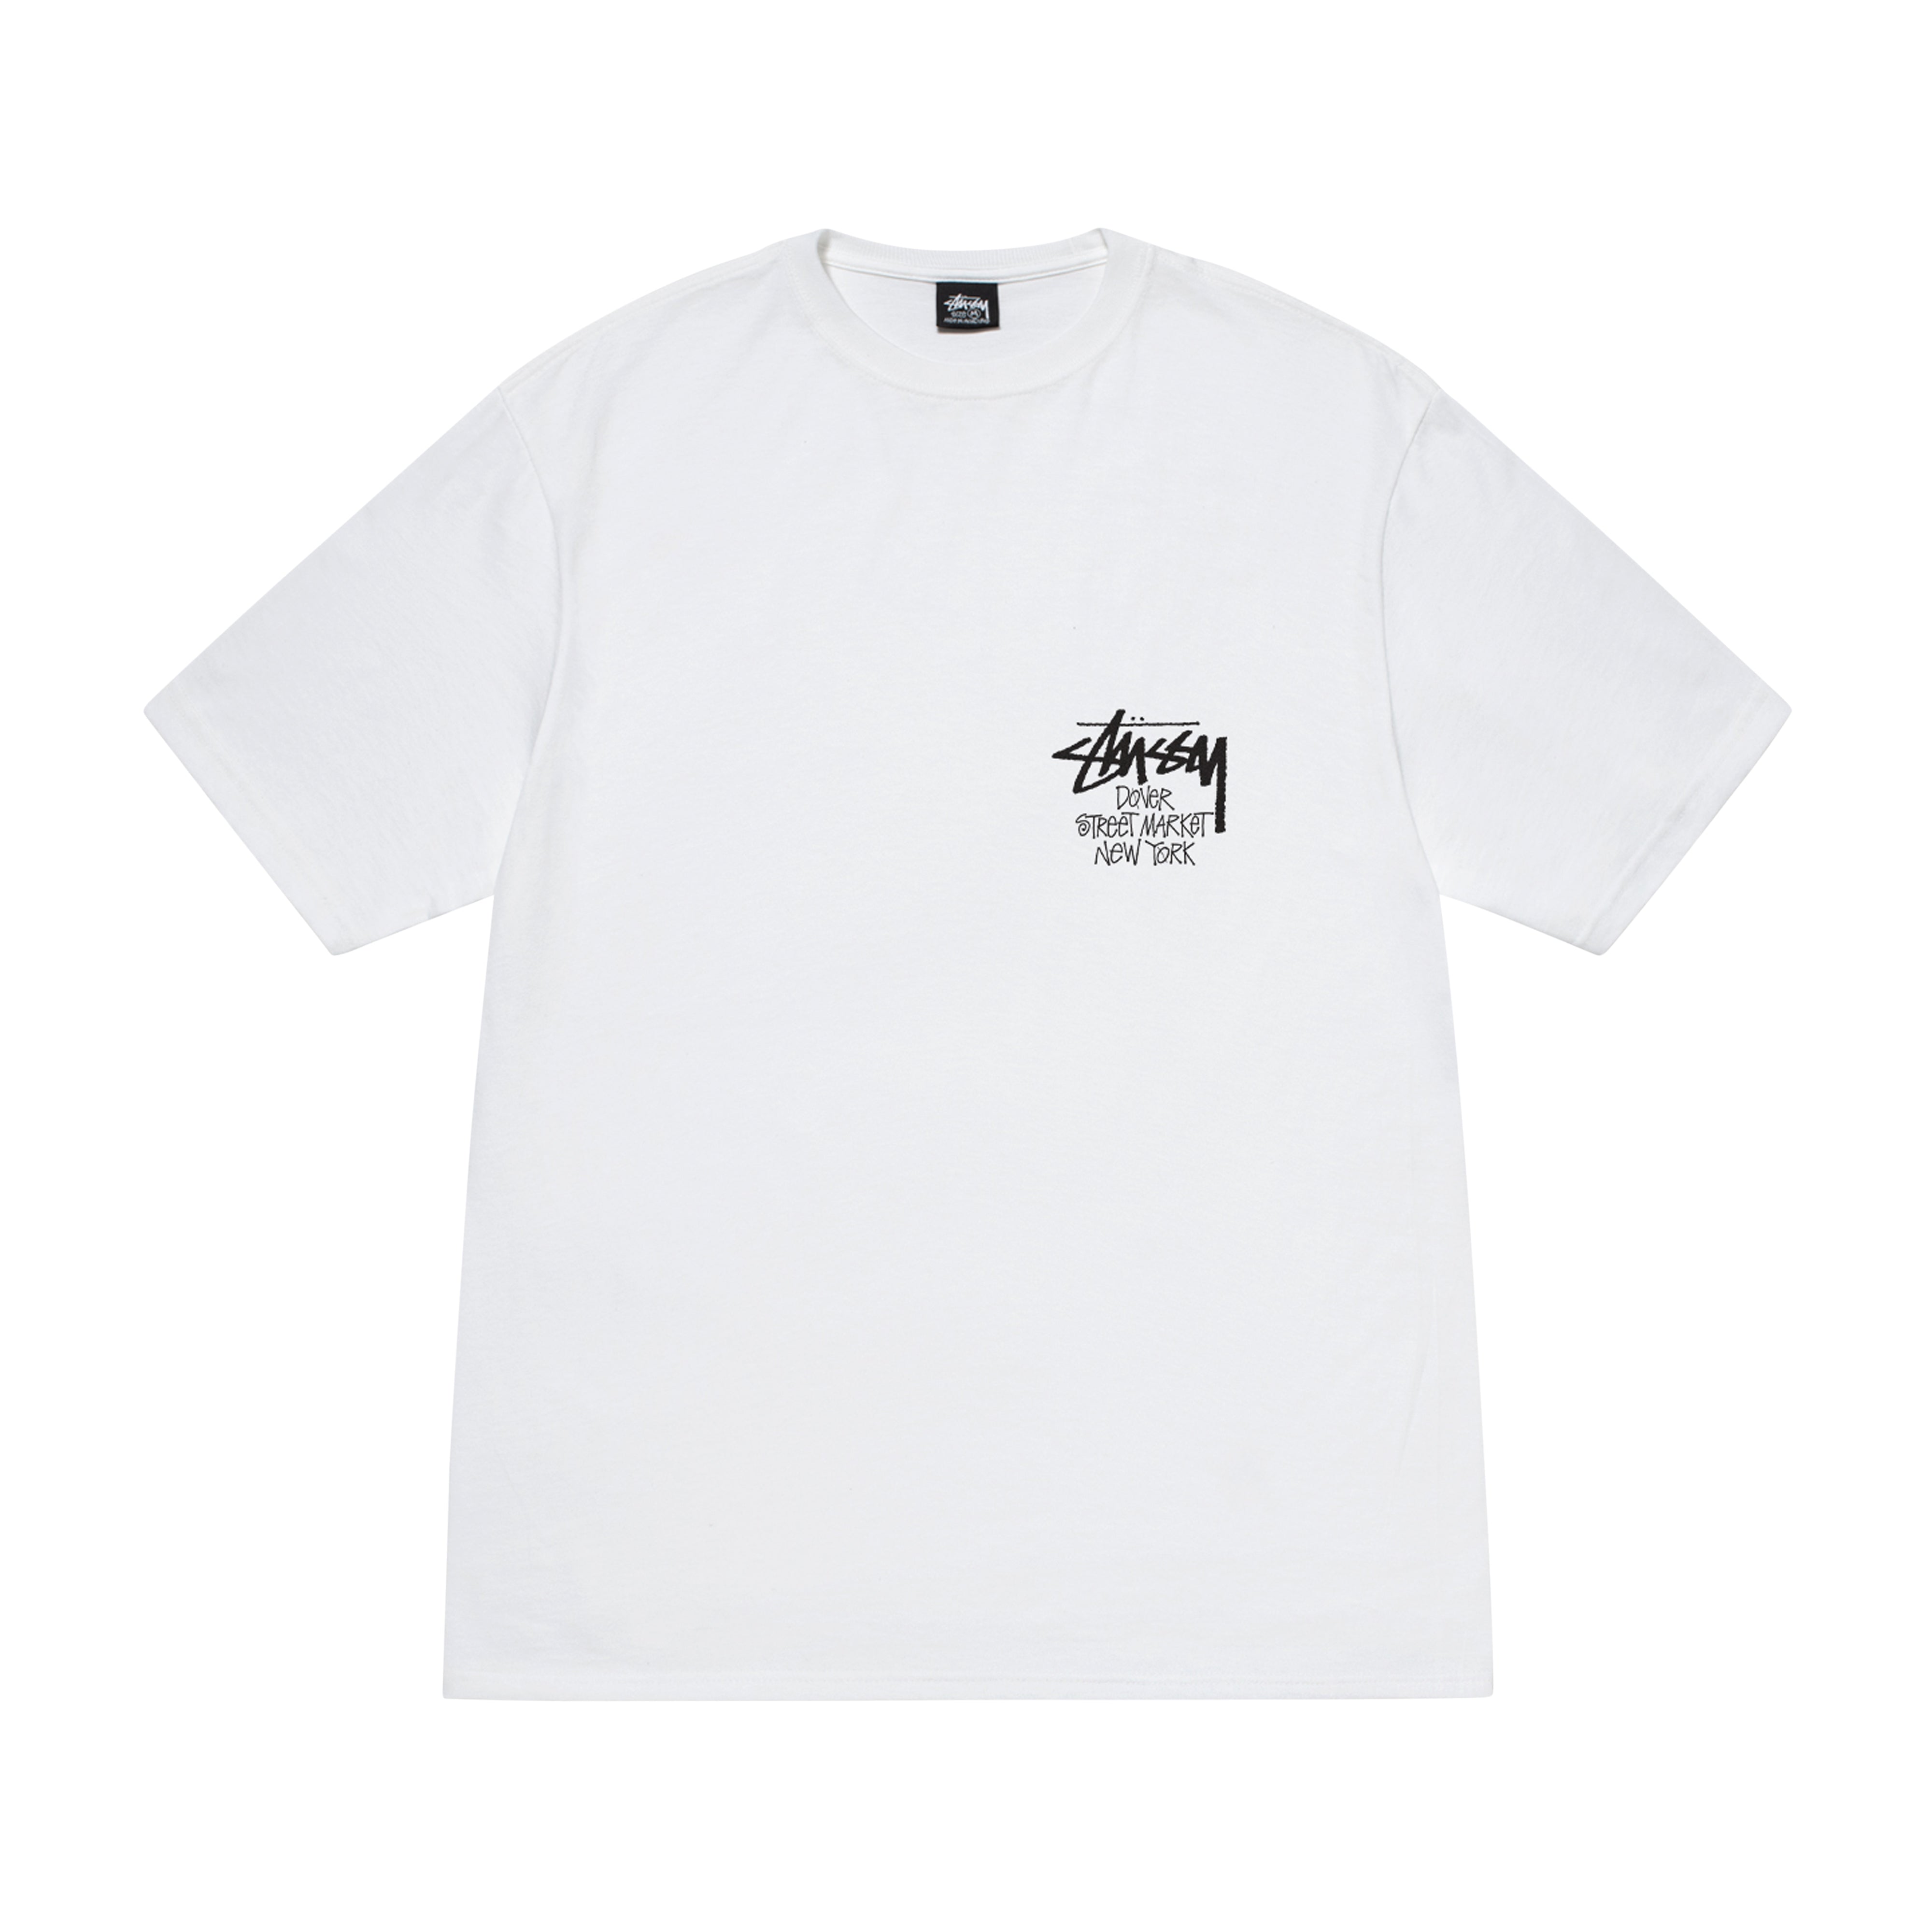 Stüssy - Men's DSM New York T-Shirt - (White) – DSMNY E-SHOP